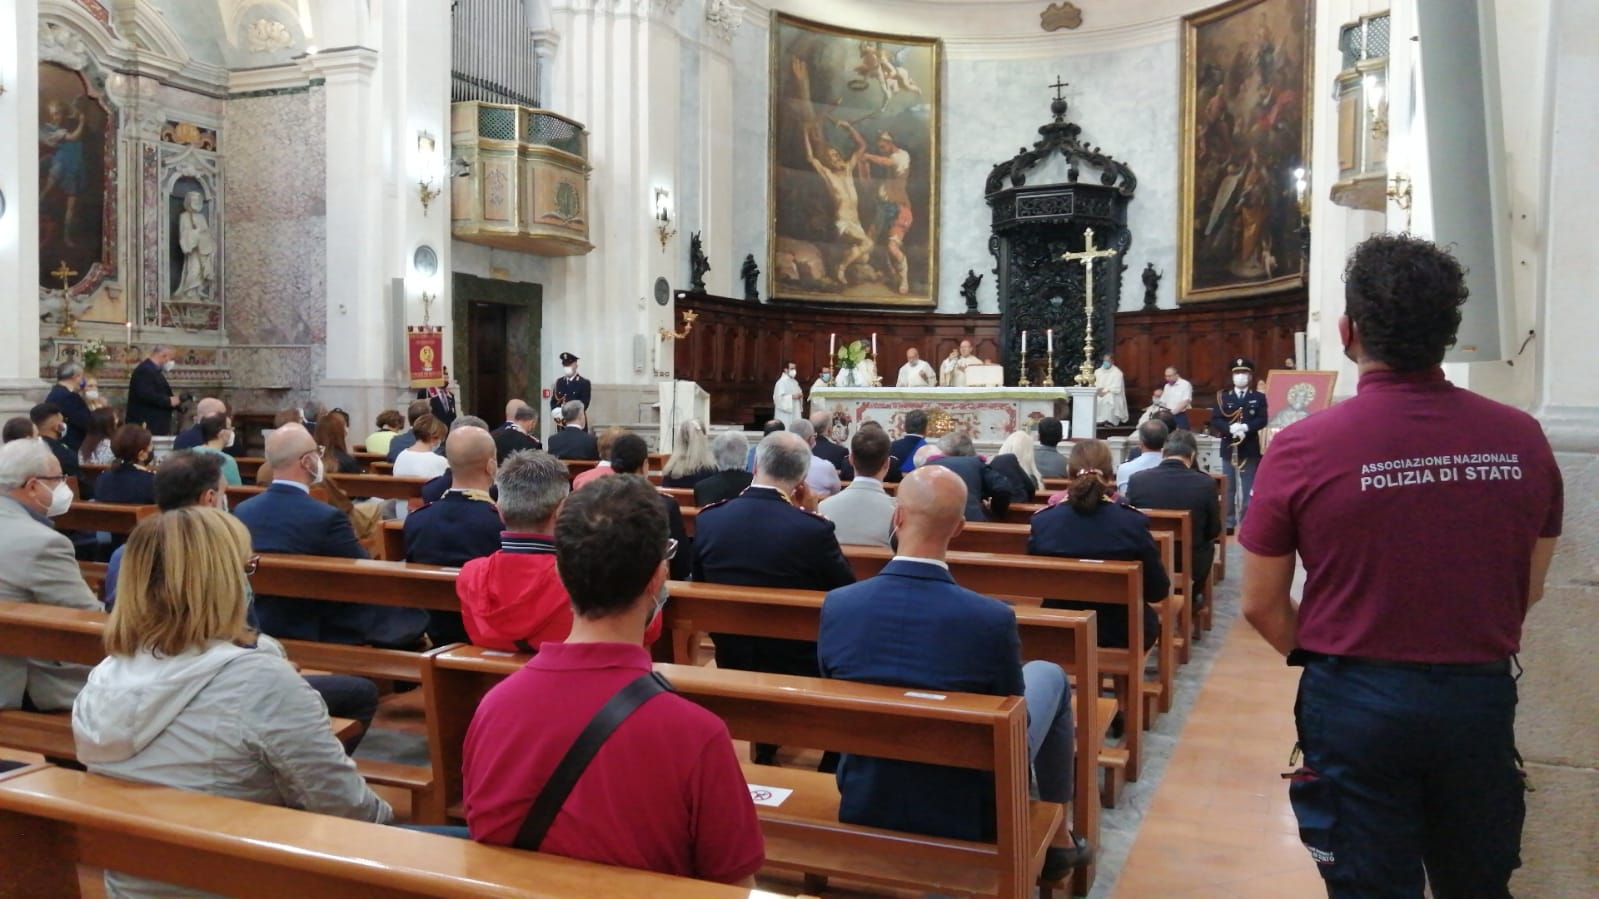 Benevento|La Polizia di Stato celebra il Patrono San Michele Arcangelo